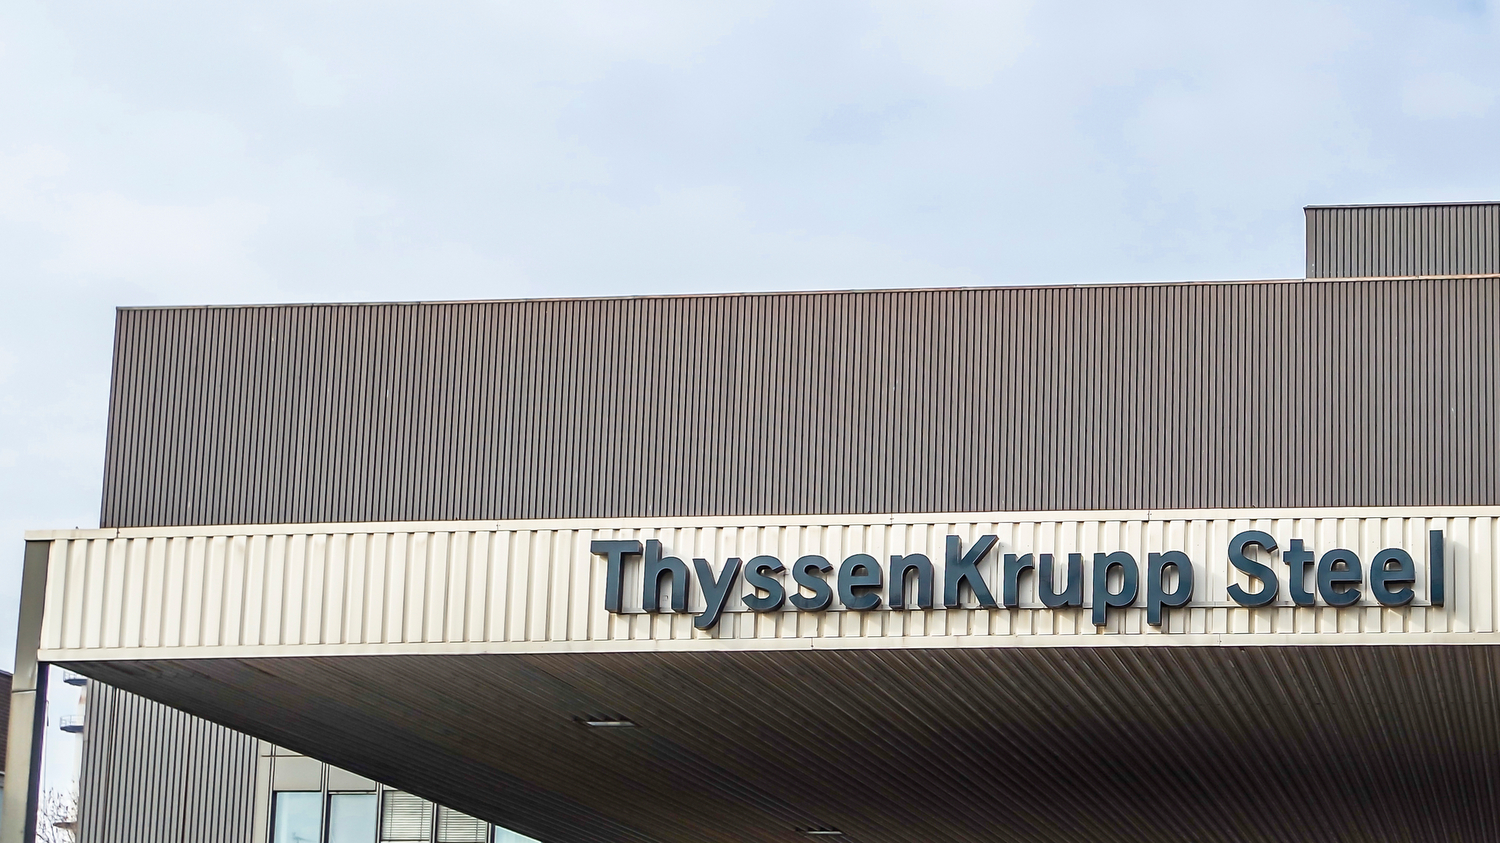 Cover articolo 6 dicembre 2007: <br> il rogo alla ThyssenKrupp